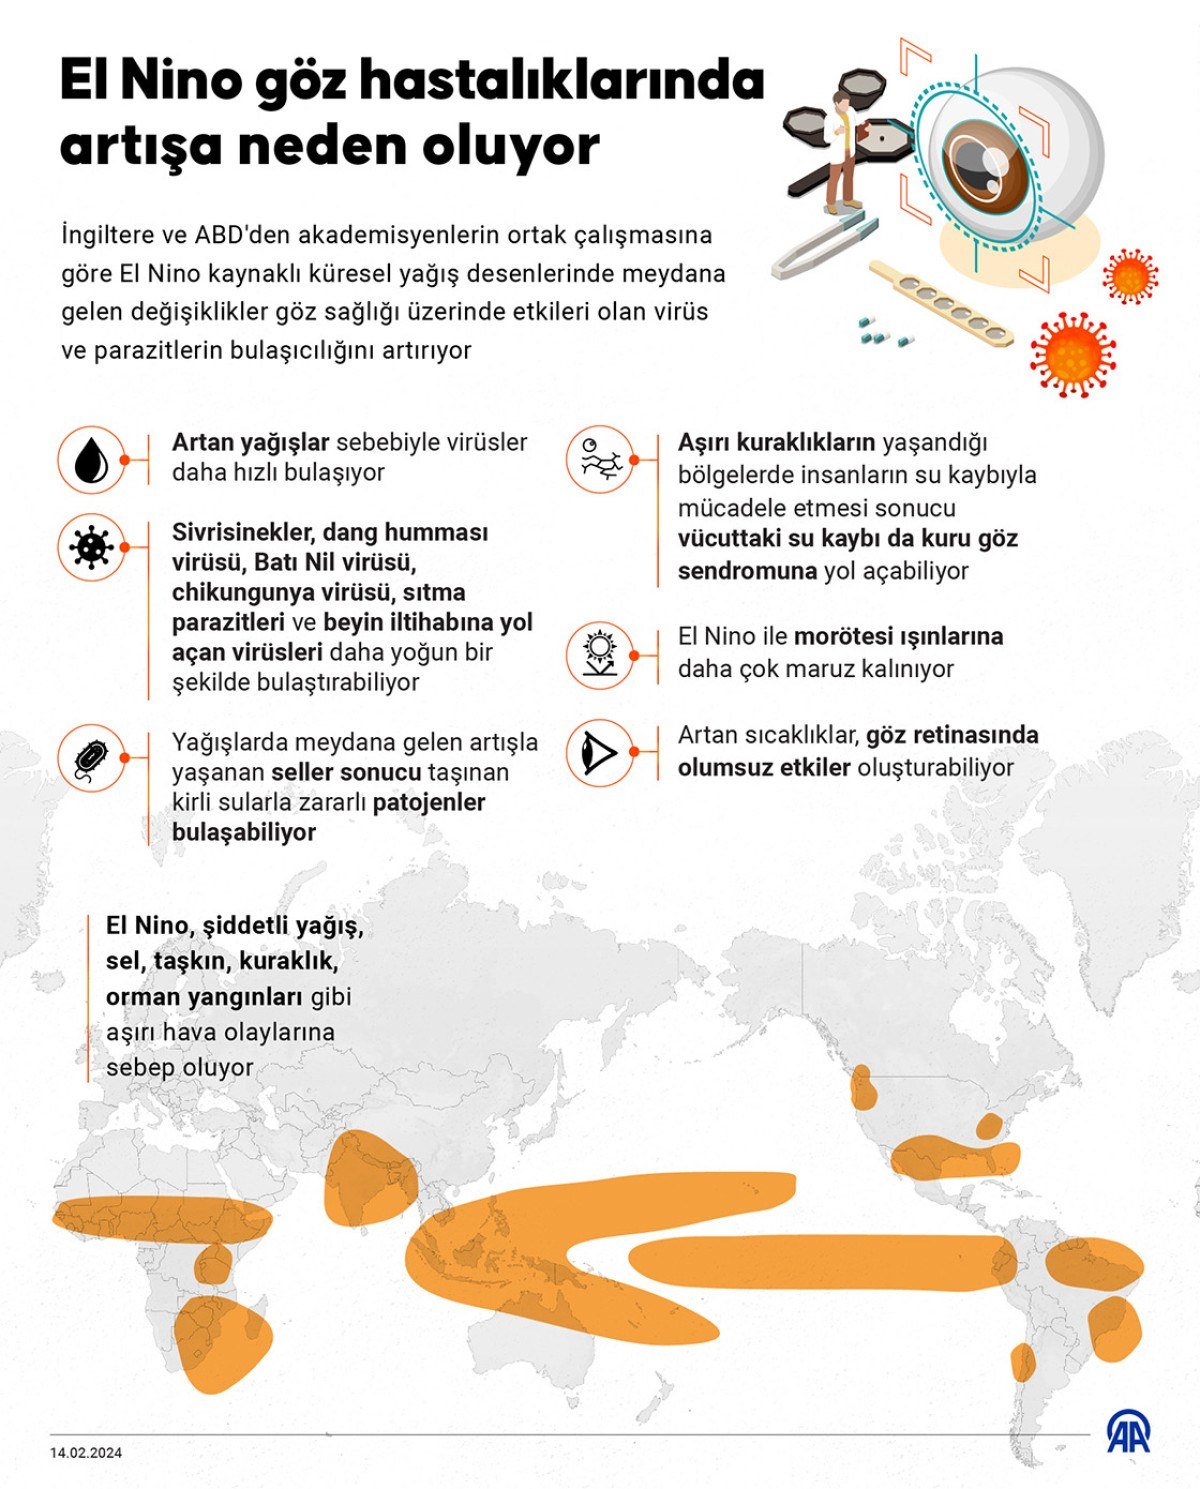 Türkiyede Soğuk Hava ve Göz Hastalıkları